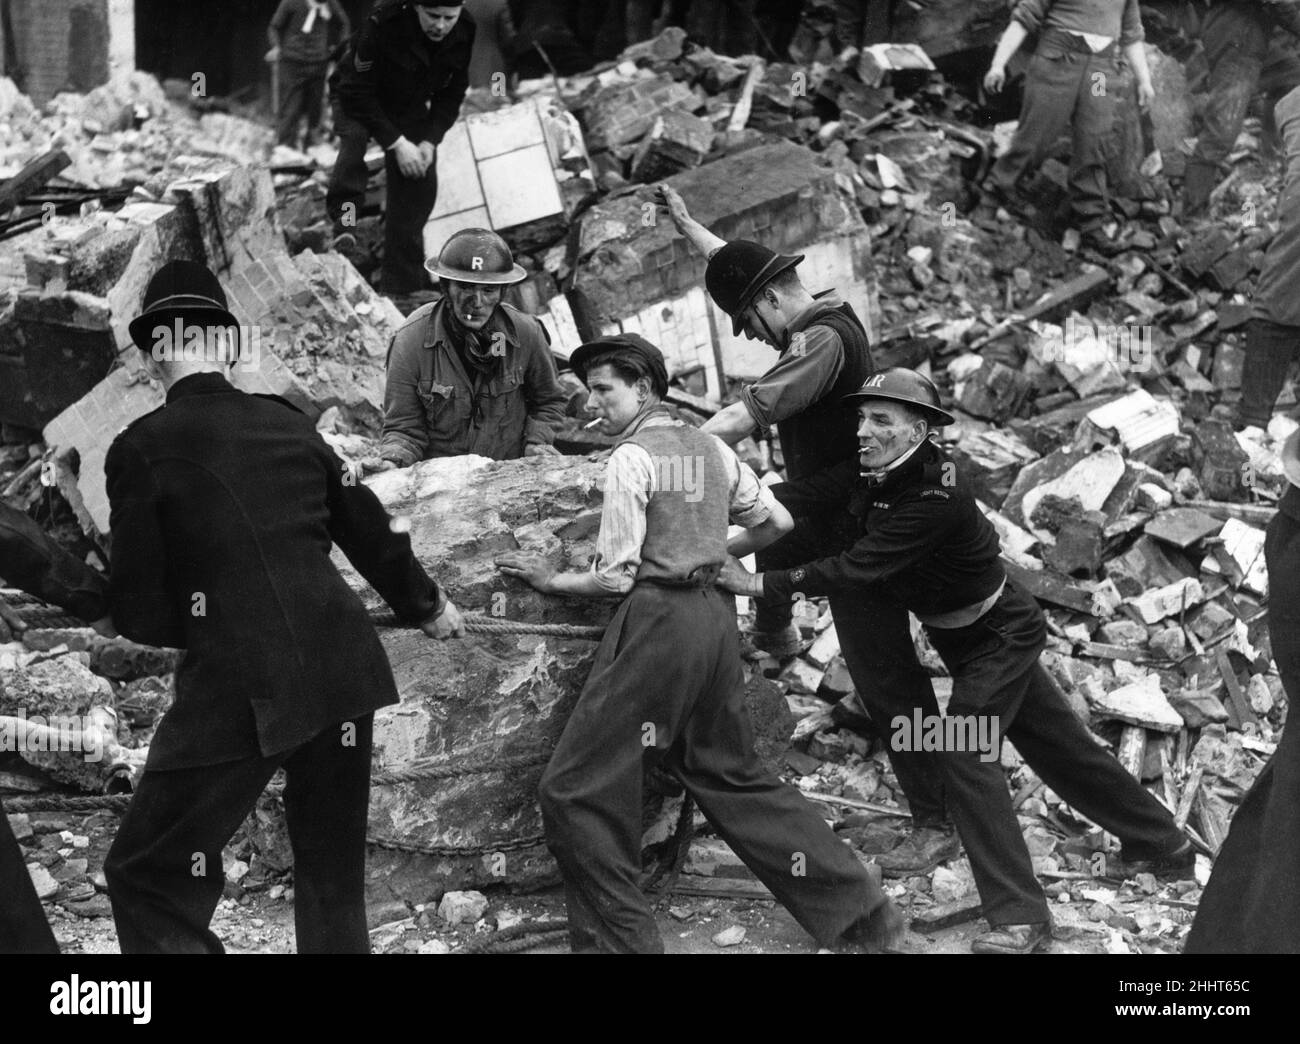 Ein Polizist mit kurzärmeligem Helm versuchte verzweifelt, einen riesigen Felsen im Wrack einer LCC Central School in den Londoner Vororten zu bewegen, nachdem er bei Tageslicht von deutschen Raidern auf dem Dach angegriffen wurde. Mehr als 20 Kinder wurden bei der Razzia getötet. 20th. Januar 1943. Stockfoto